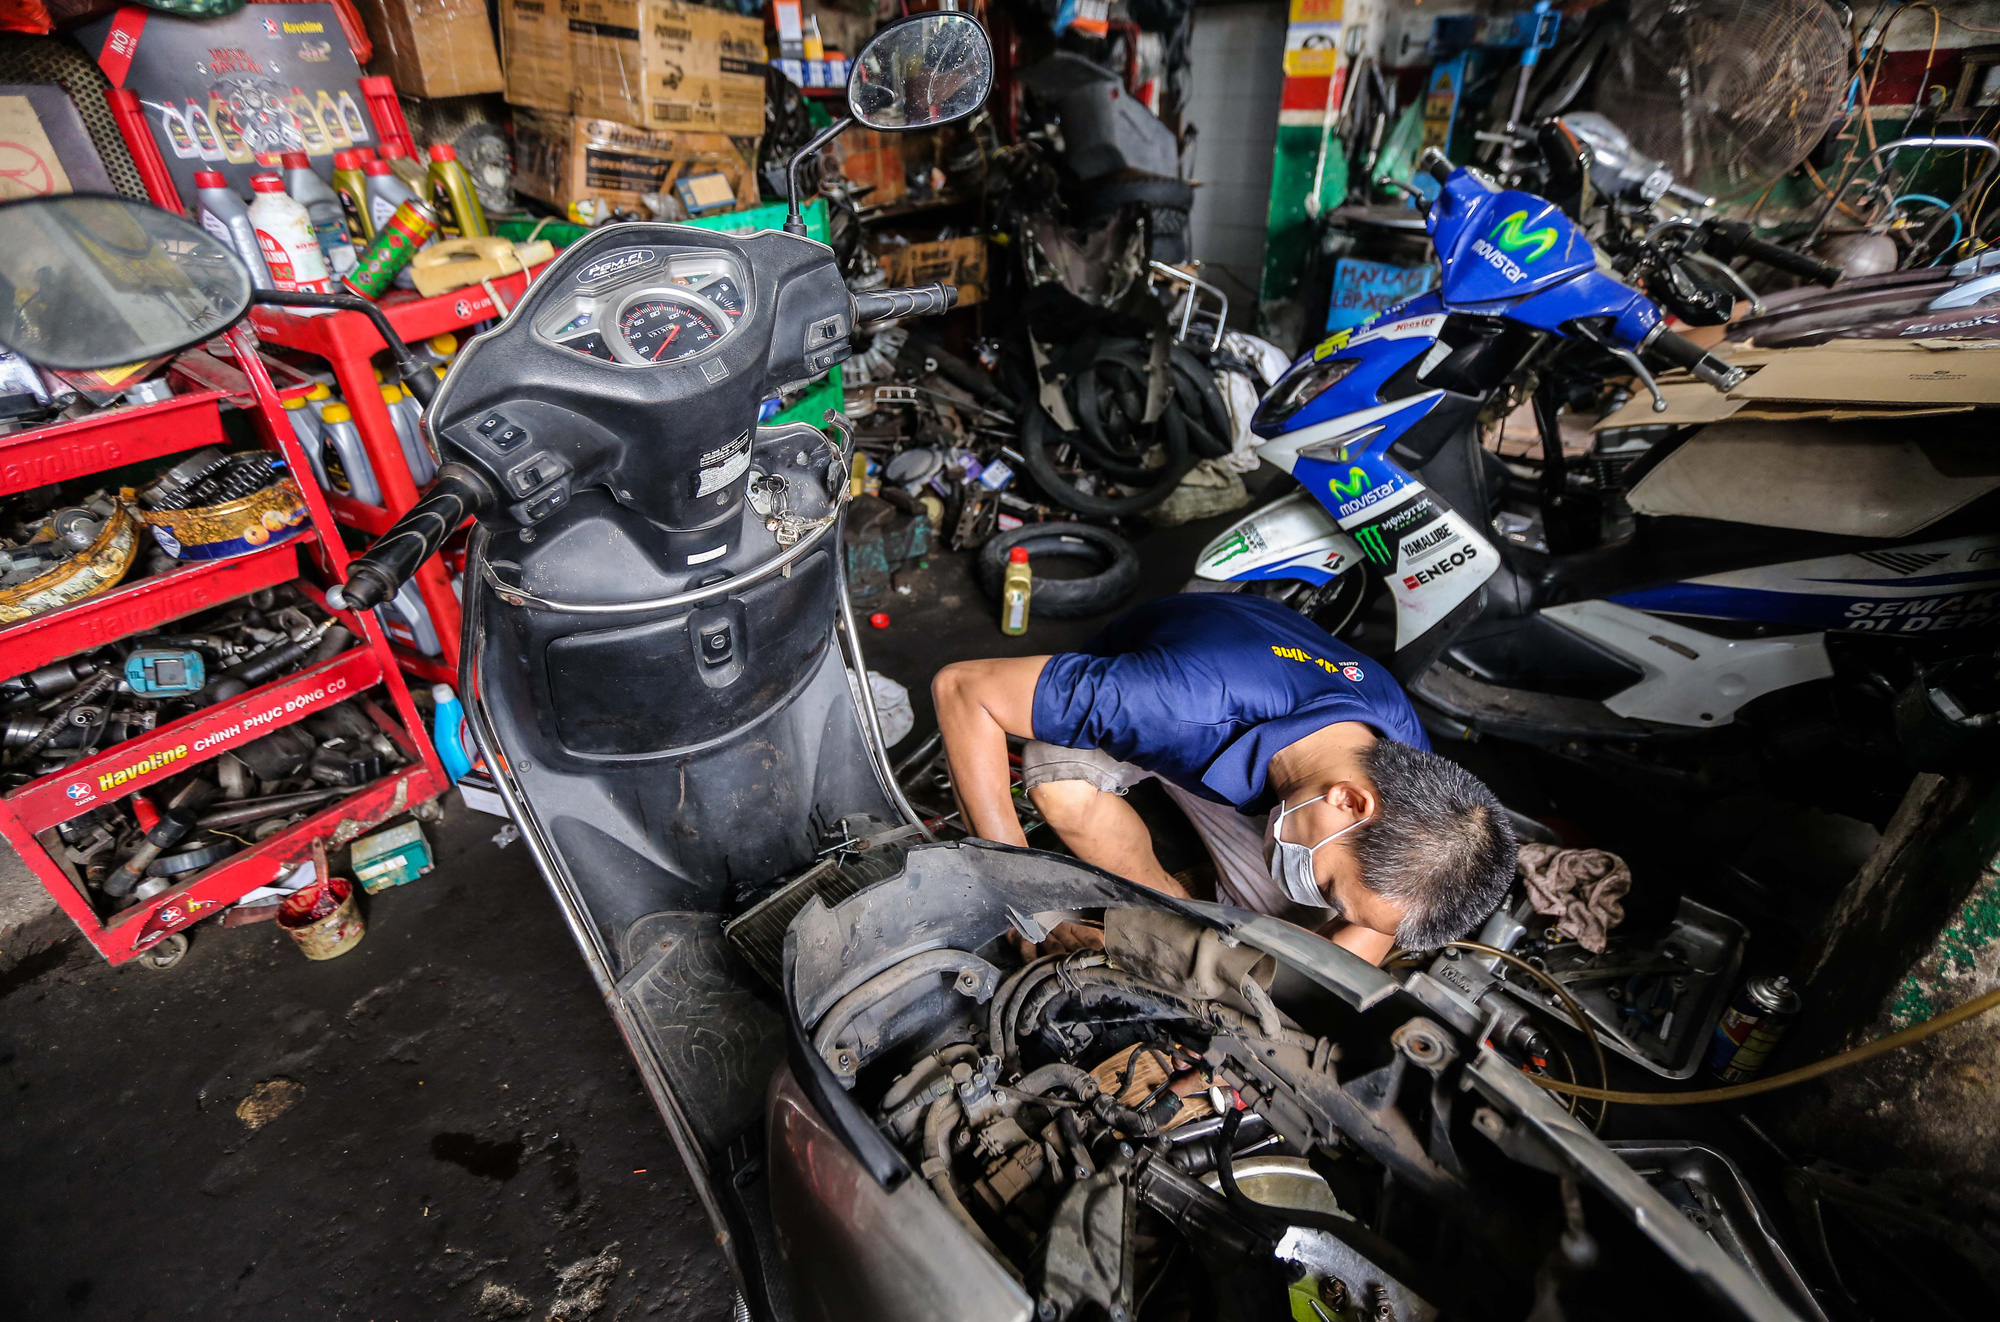 Cửa hàng sửa chữa xe máy luôn sẵn sàng để giúp bạn giải quyết các vấn đề liên quan đến xe của mình. Với đội ngũ chuyên nghiệp và nhiều năm kinh nghiệm, chúng tôi sẽ không làm bạn thất vọng.